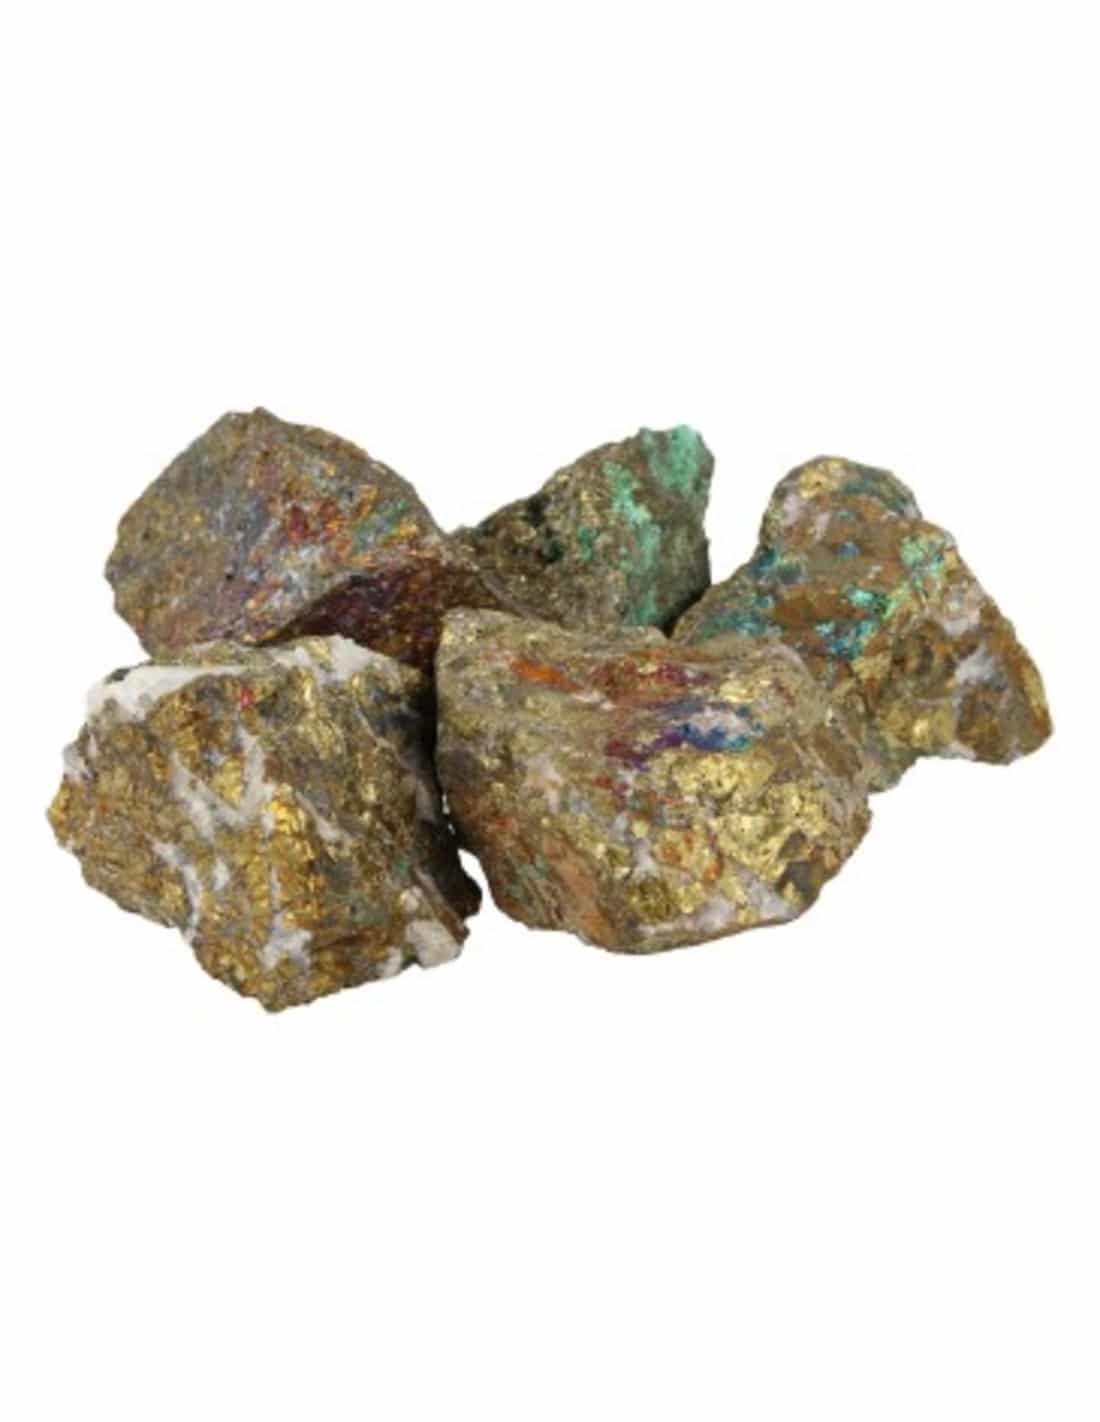 Roher Brocken Edelstein Chalkopyrit (1 kg) unter Edelsteine & Mineralien - Edelstein Arten - Rohe Edelsteine